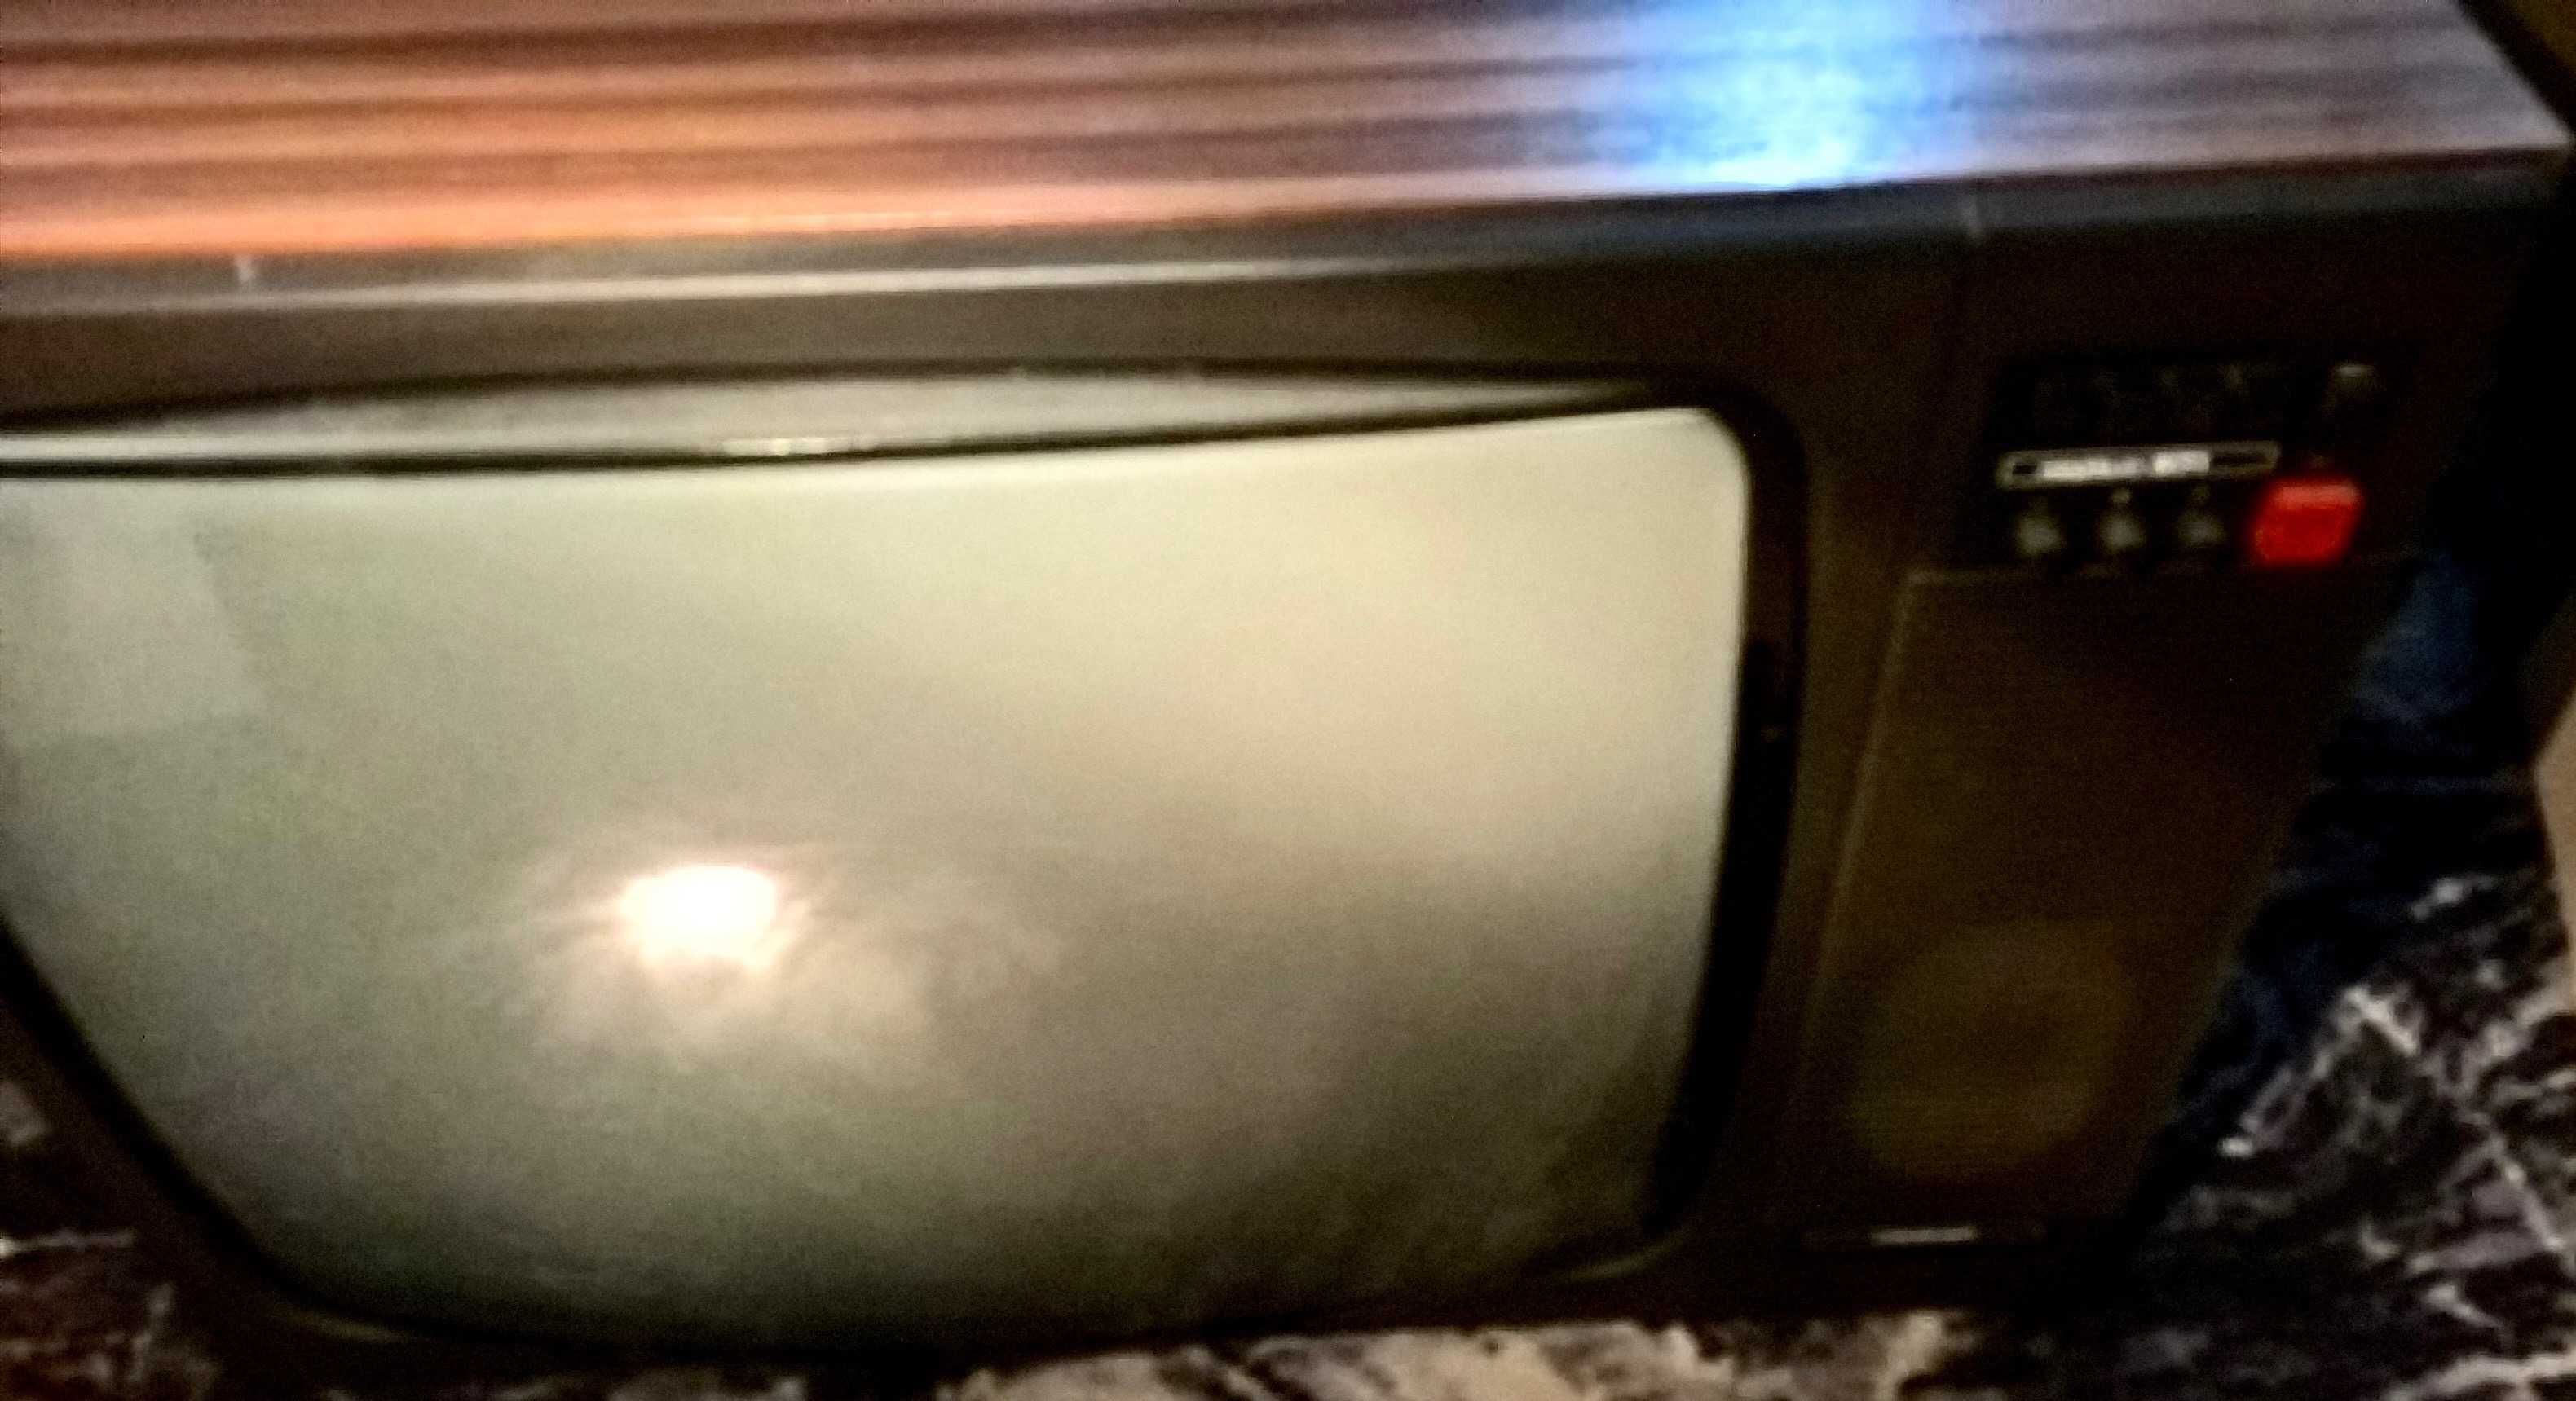 Telewizor Neptun 671 czarnobiały, czasy PRL, kompletny uszkodzony